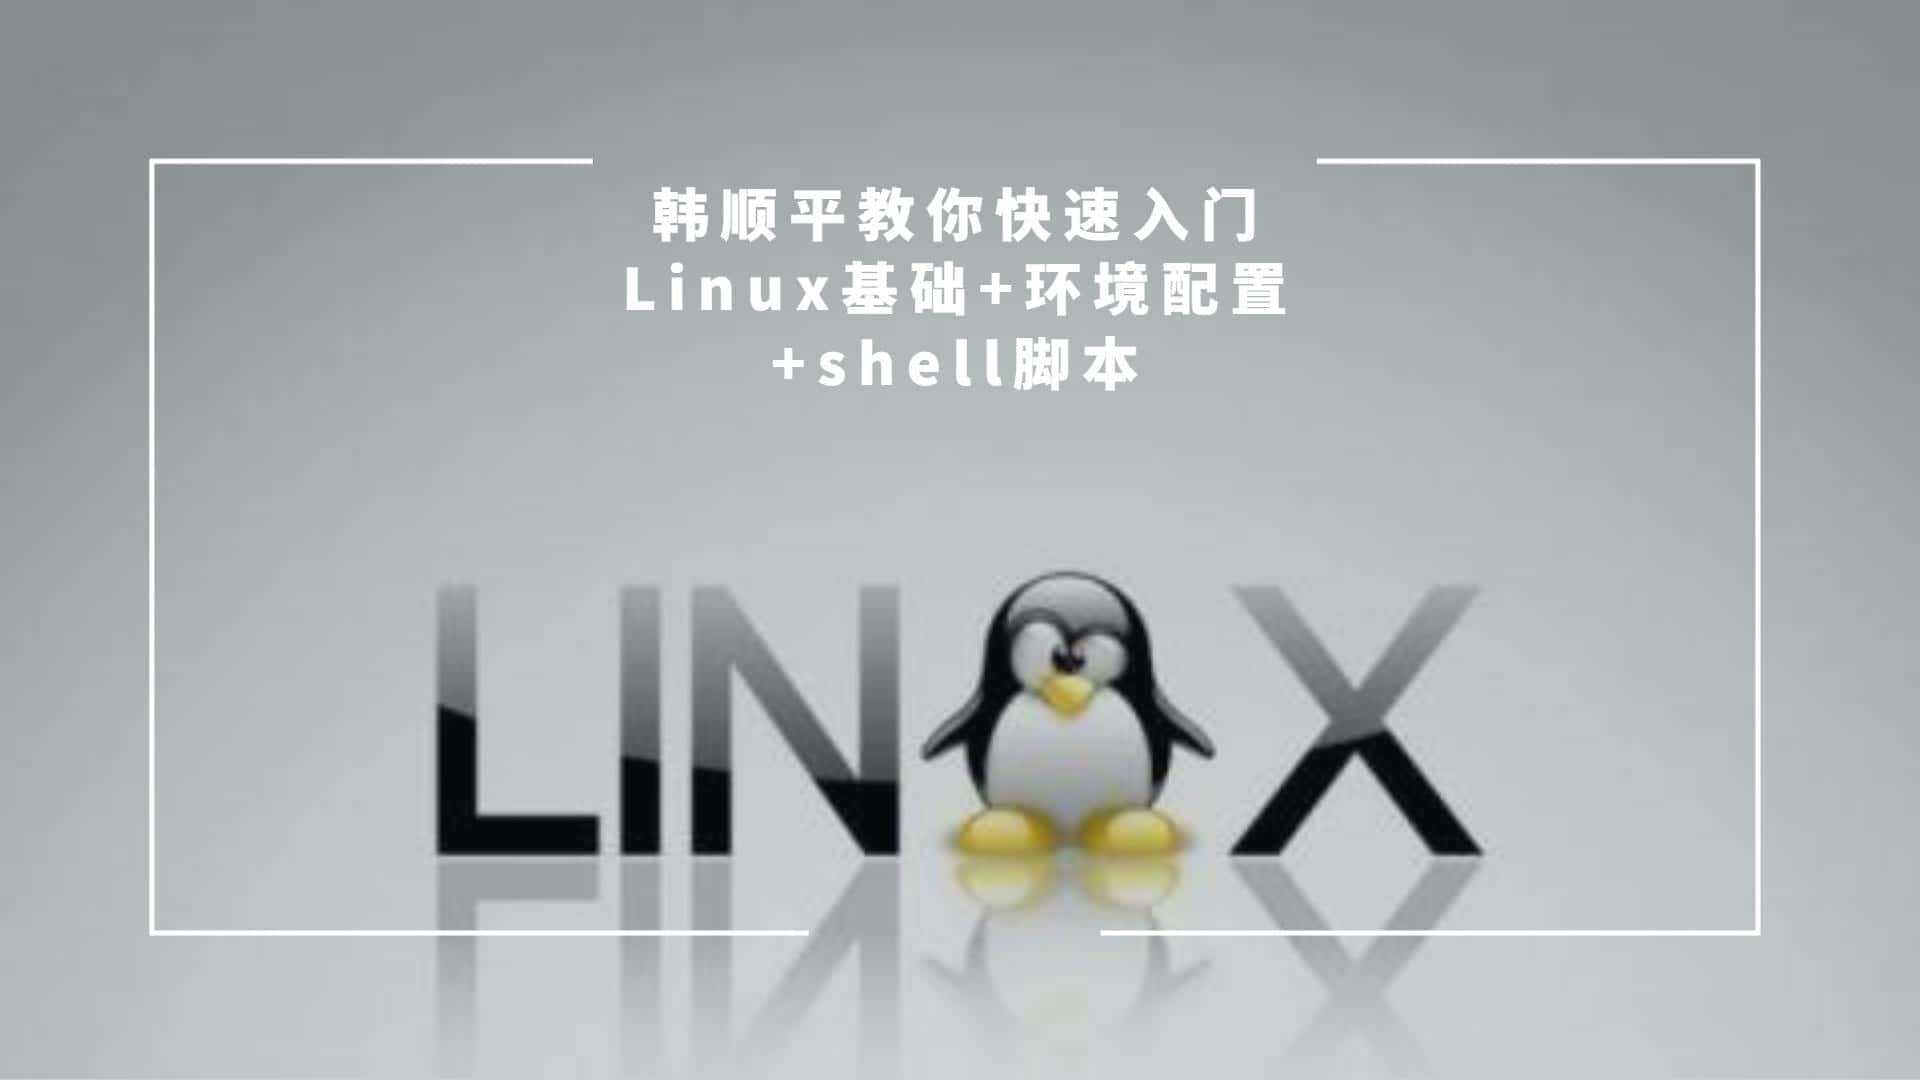 韩顺平教你快速入门linux基础+环境配置+shell脚本